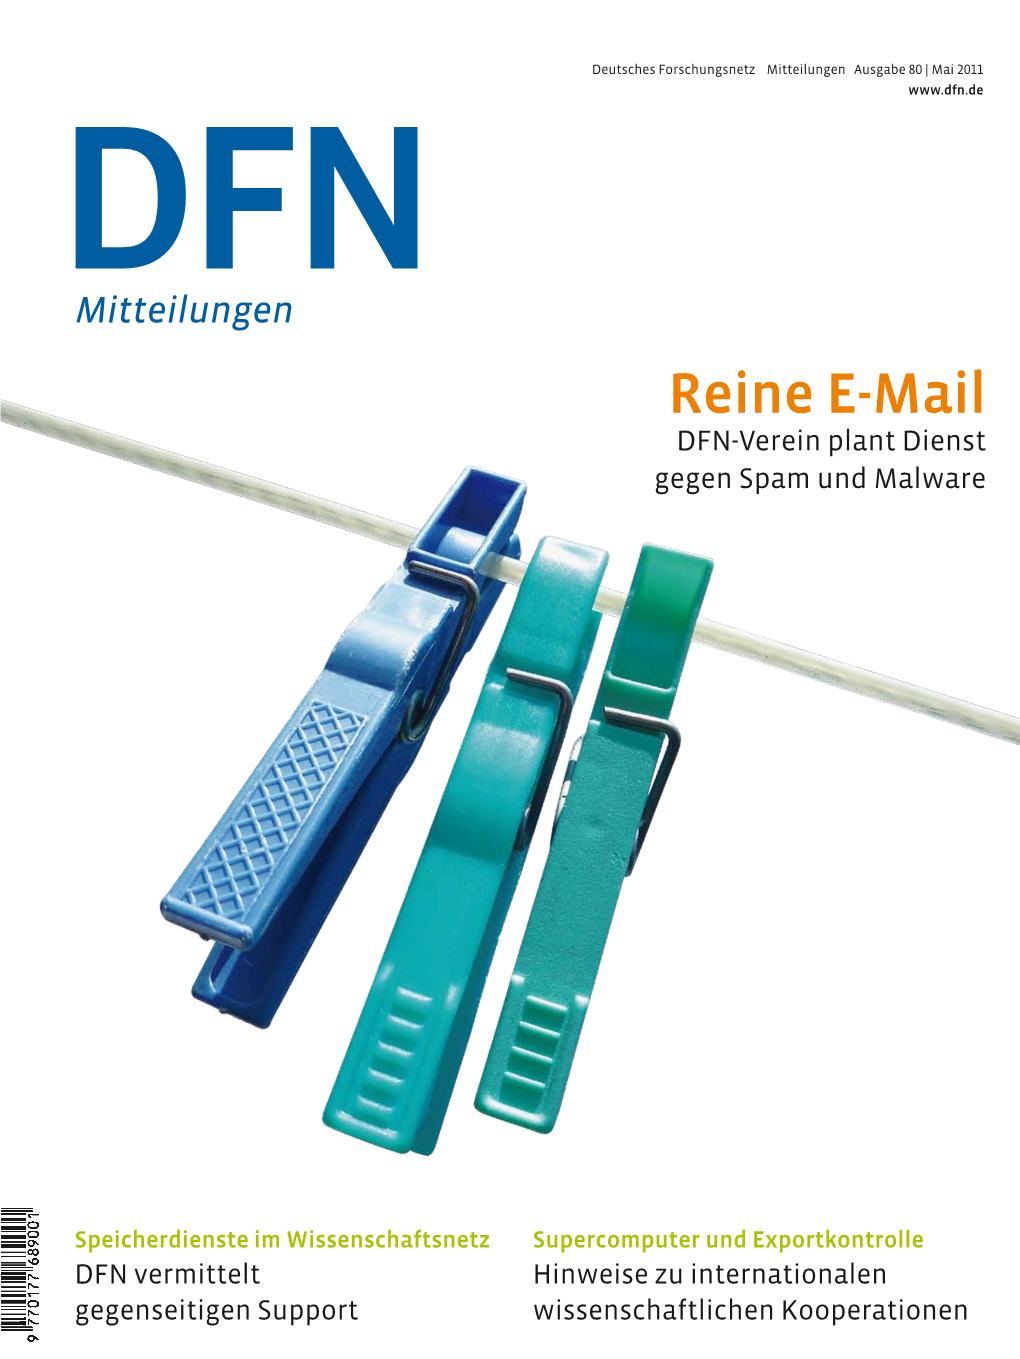 DFN Mitteilungen Ausgabe 80 | Mai 2011